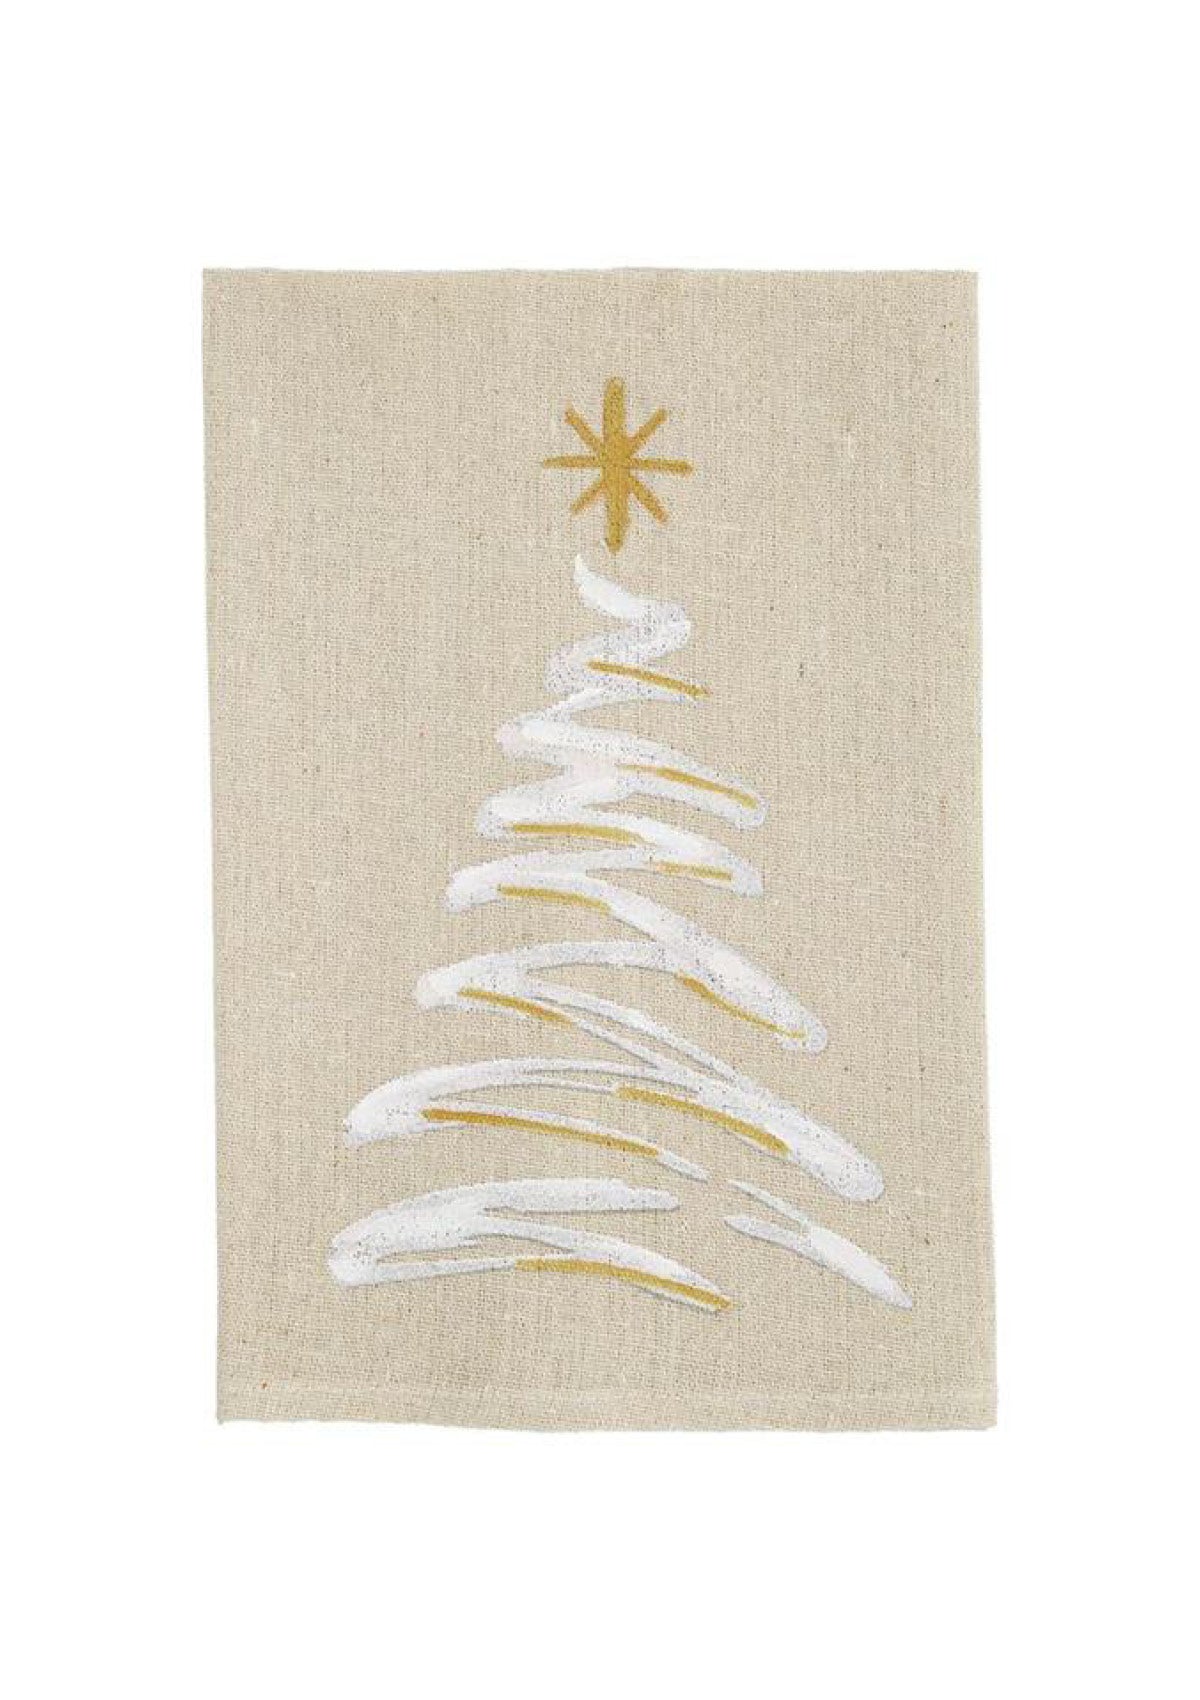 Christmas Tree Hand Towel